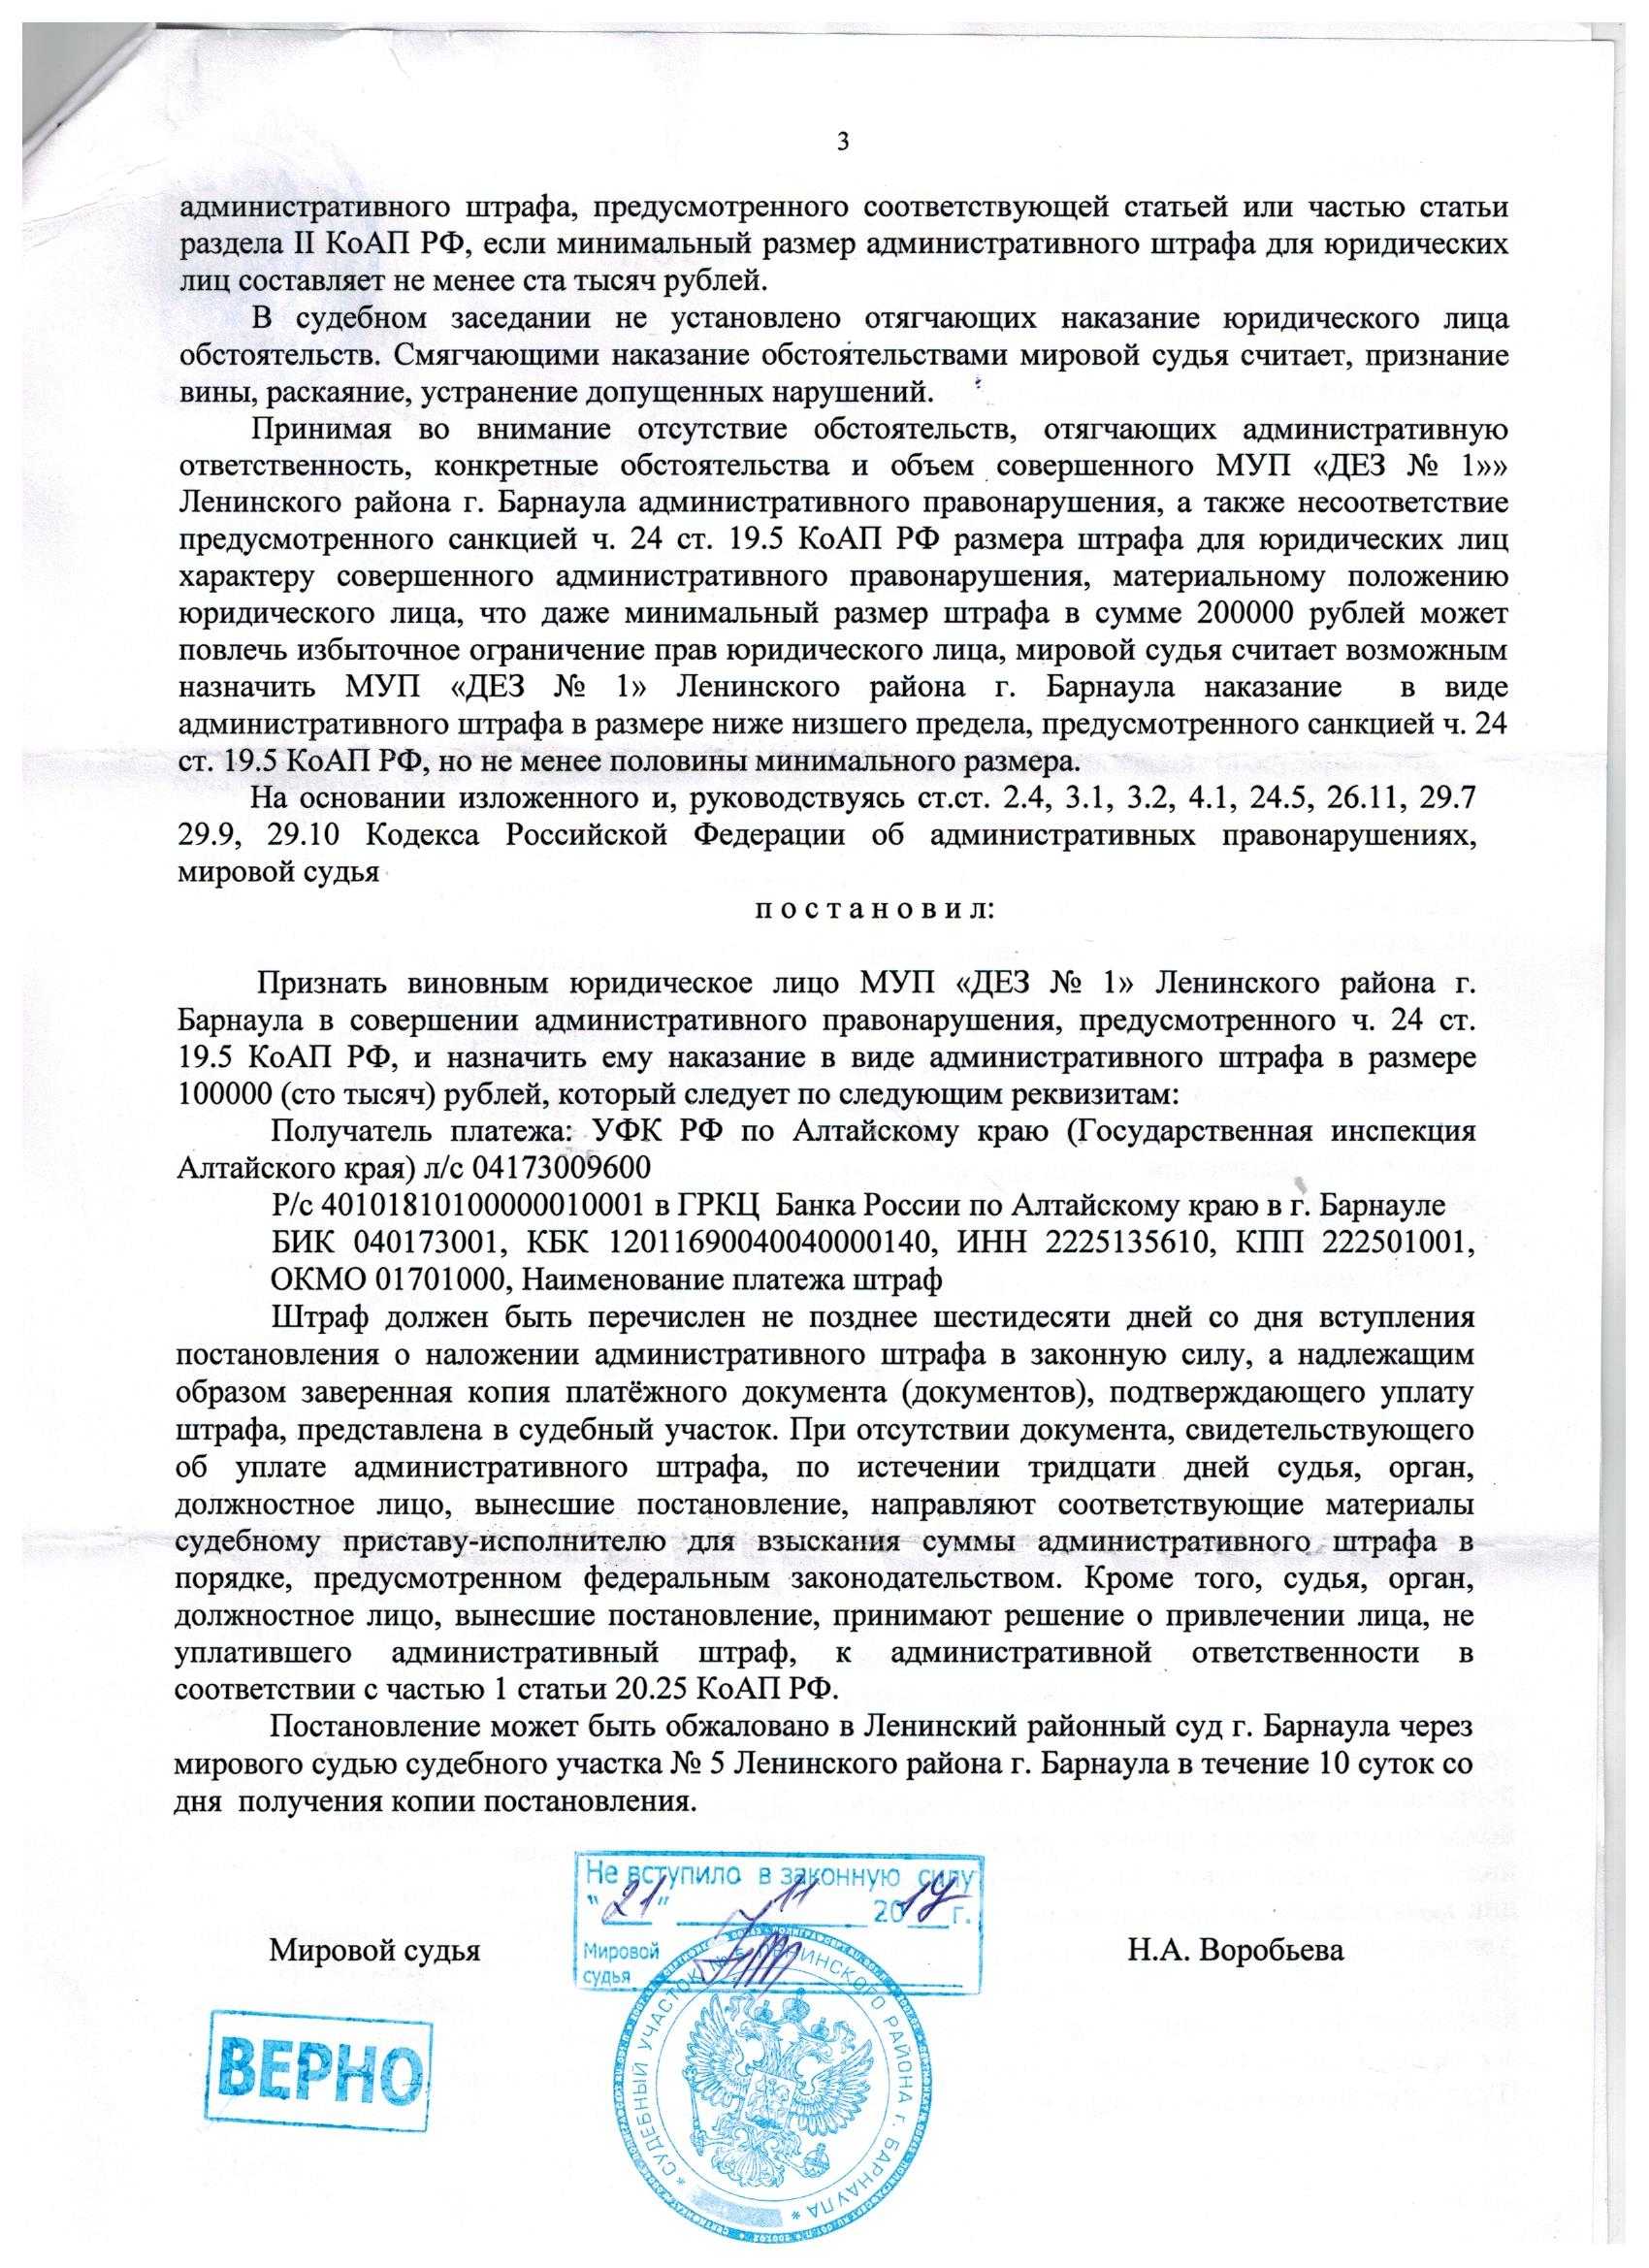 Как снизить штраф за административное правонарушение должностного лица ниже минимальной суммы штрафа | crownconsulting.ru